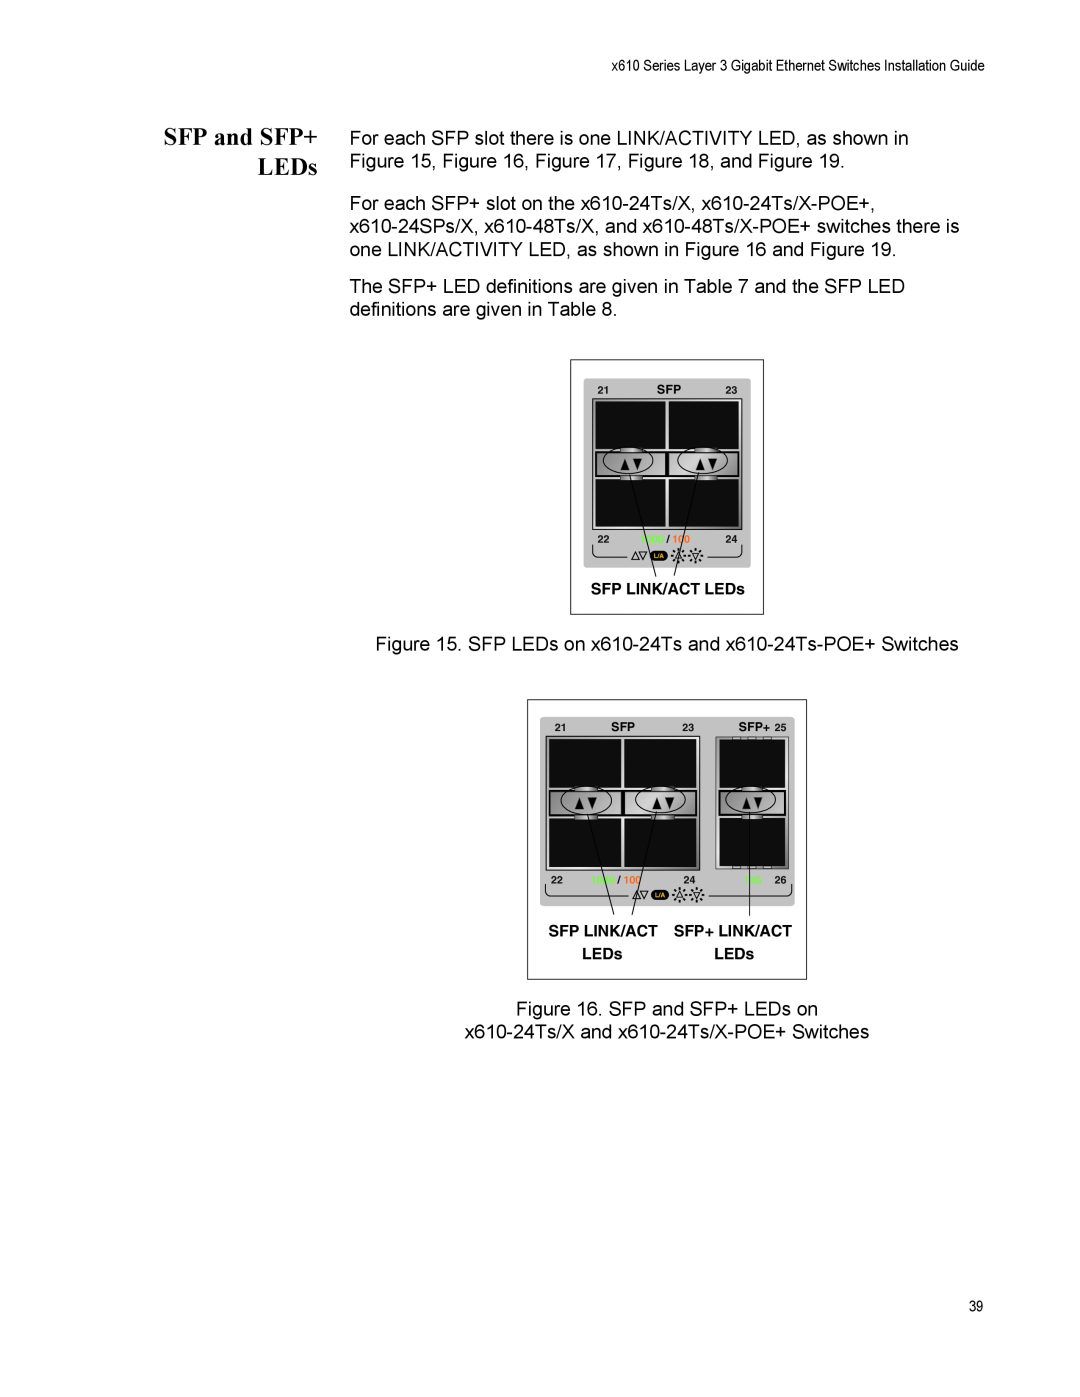 Allied Telesis X610-48TS-POE+, X610-48TS/X, X610-24TS-POE+, X610-24SPS/X, X610-24TS/X-POE+ manual SFP and SFP+ LEDs 